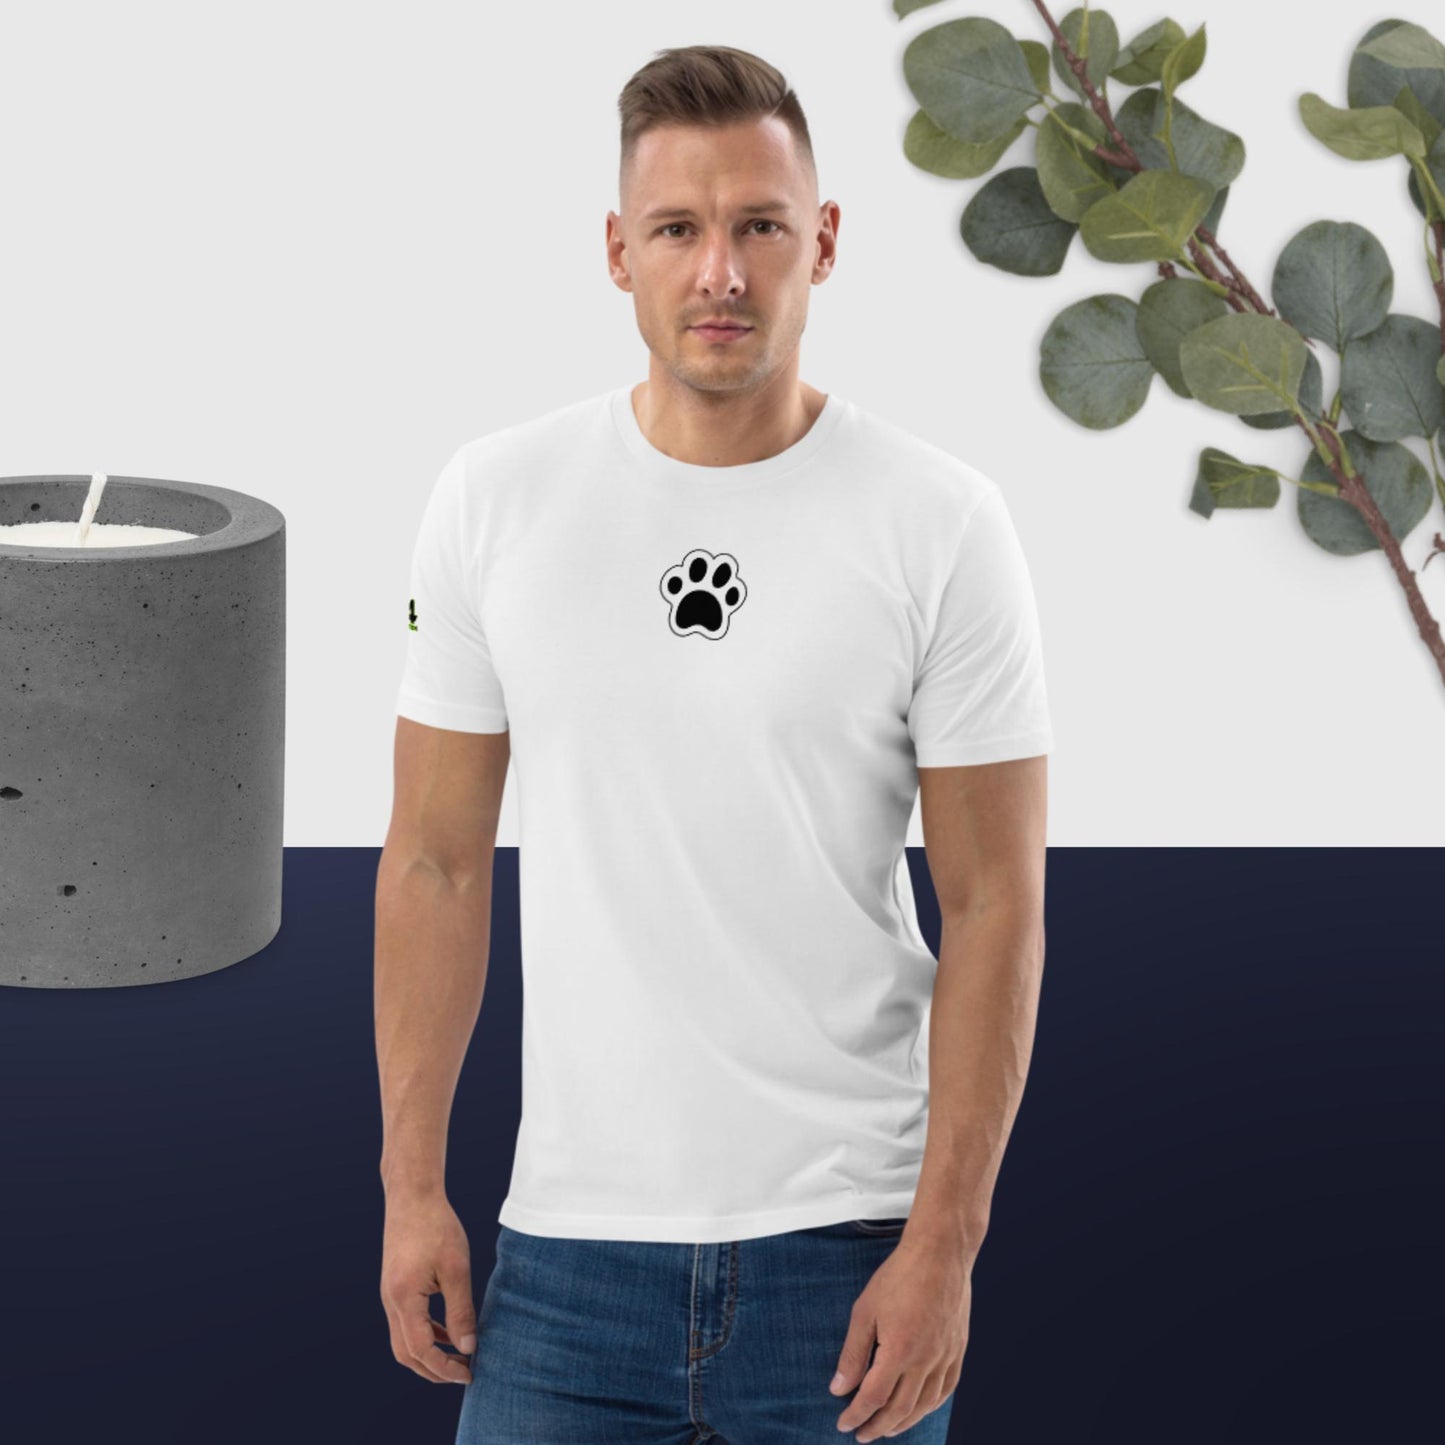 Cat Life VII 954 Signature Unisex organic cotton t-shirt